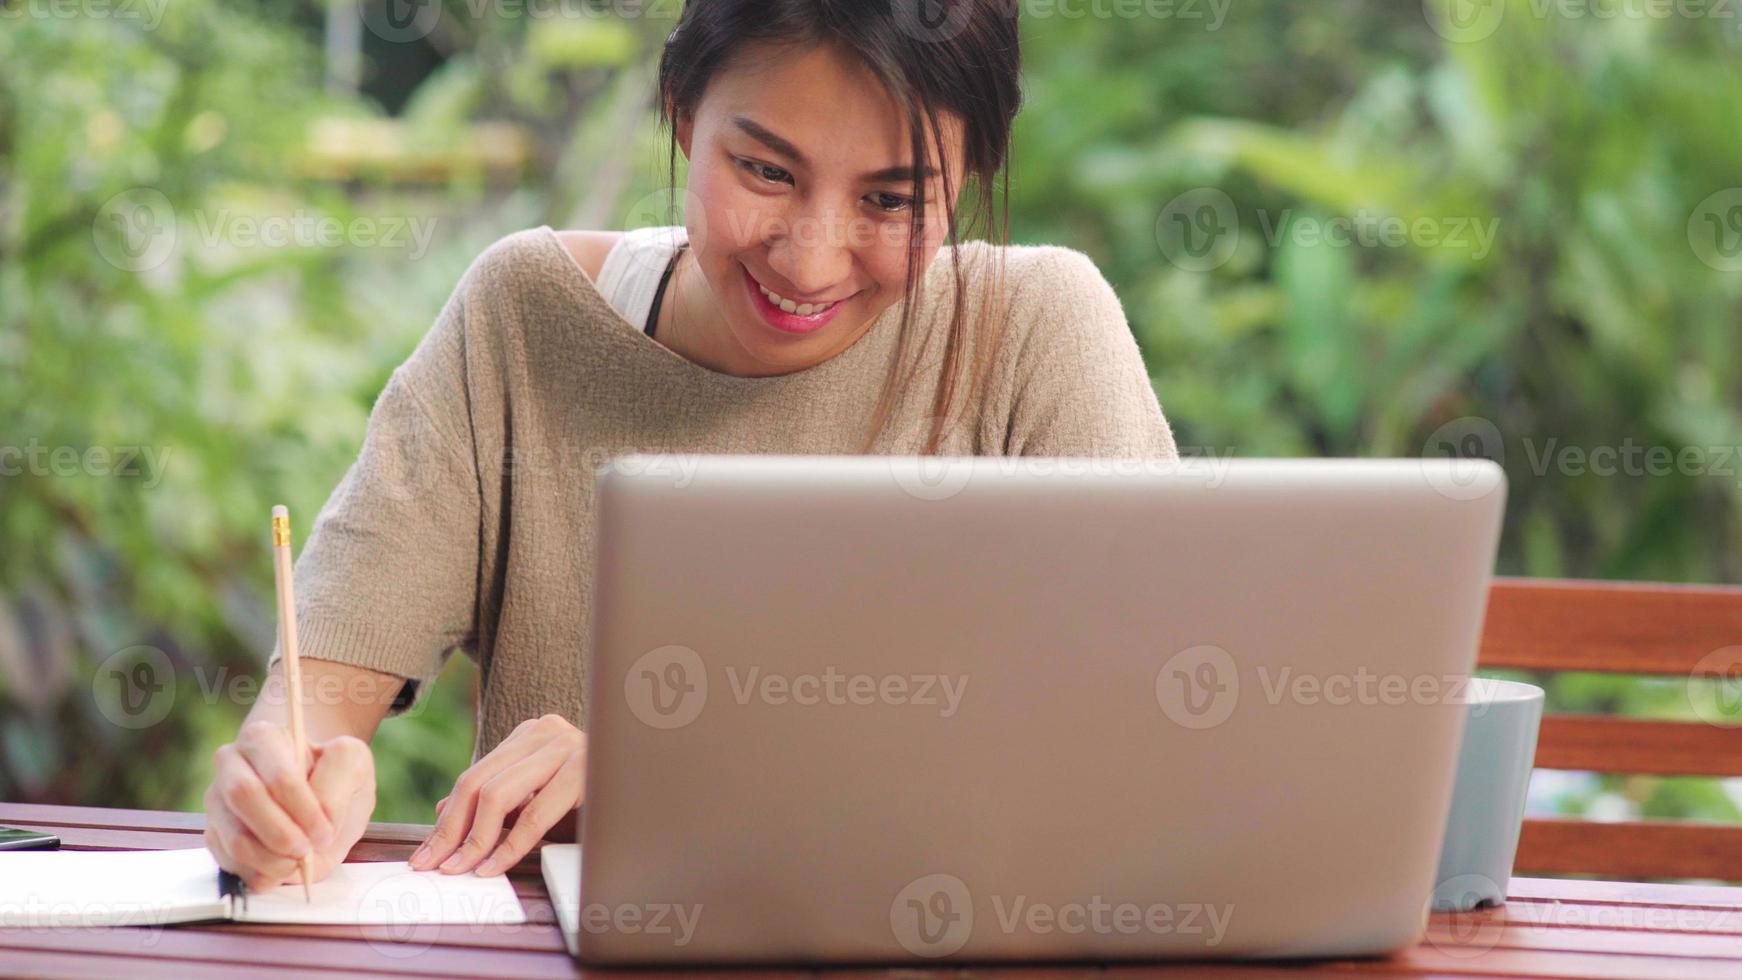 femme asiatique indépendante travaillant à la maison, femme d'affaires travaillant sur ordinateur portable assise sur une table dans le jardin le matin. femmes de style de vie travaillant à la maison concept. photo